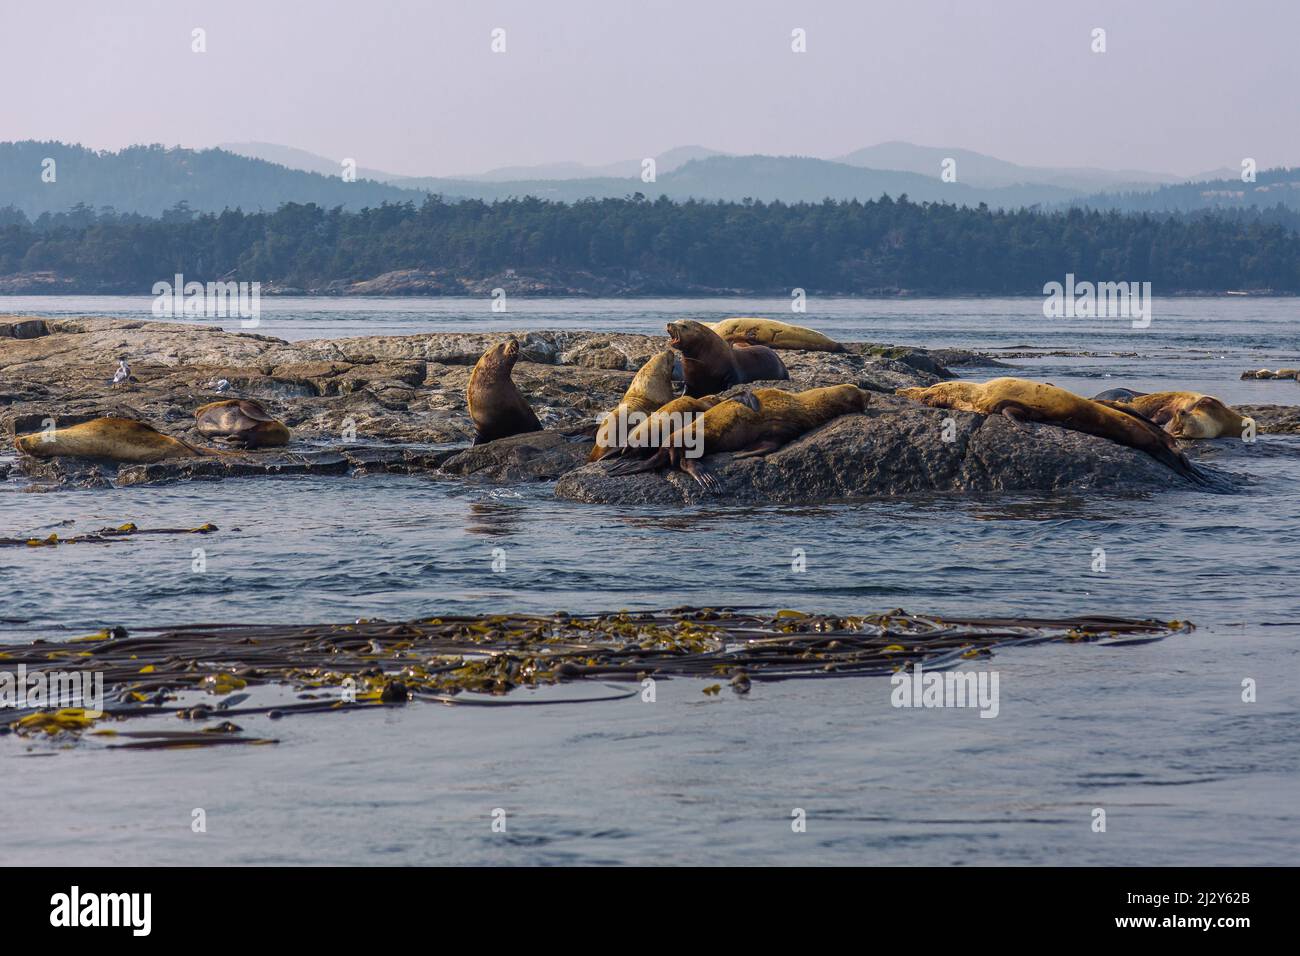 Race Rocks Island vicino a Victoria con leoni marini Steller, Juan de Fuca stretto Foto Stock